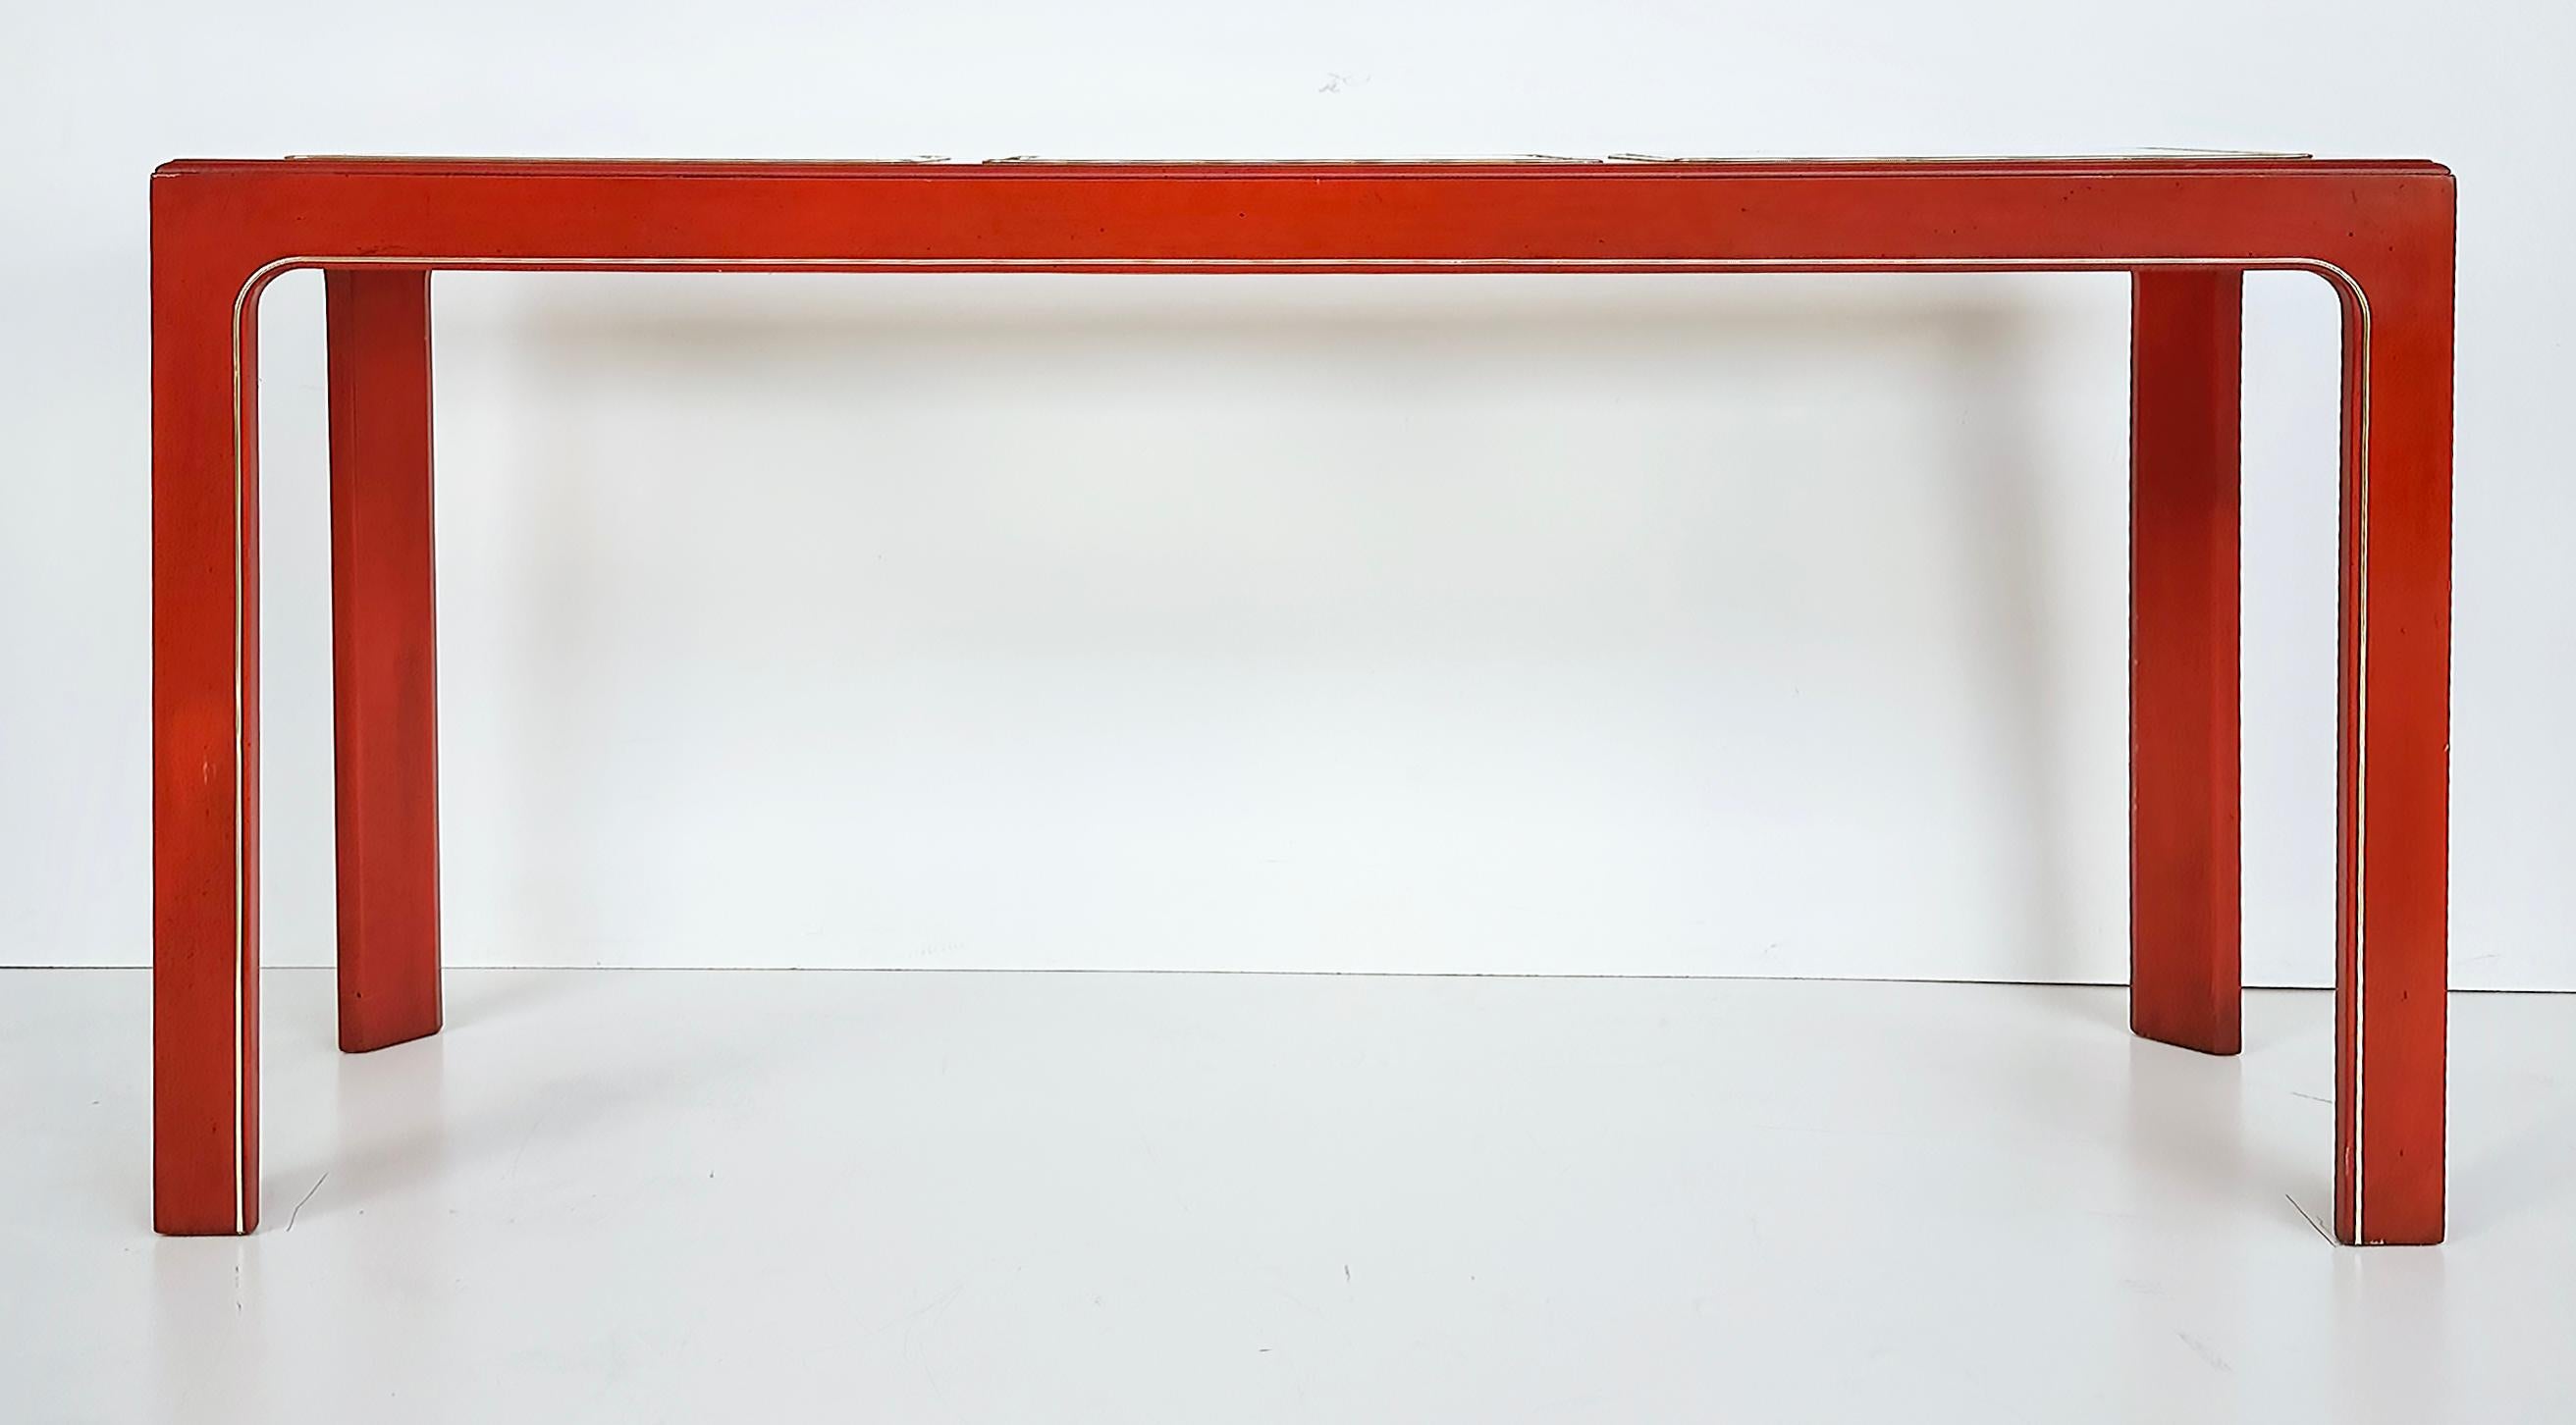 Table console laquée orange avec plateaux en verre biseauté encastrés

Nous proposons à la vente une table console en bois laqué orange, garnie de laiton, avec trois plateaux en bois biseautés.